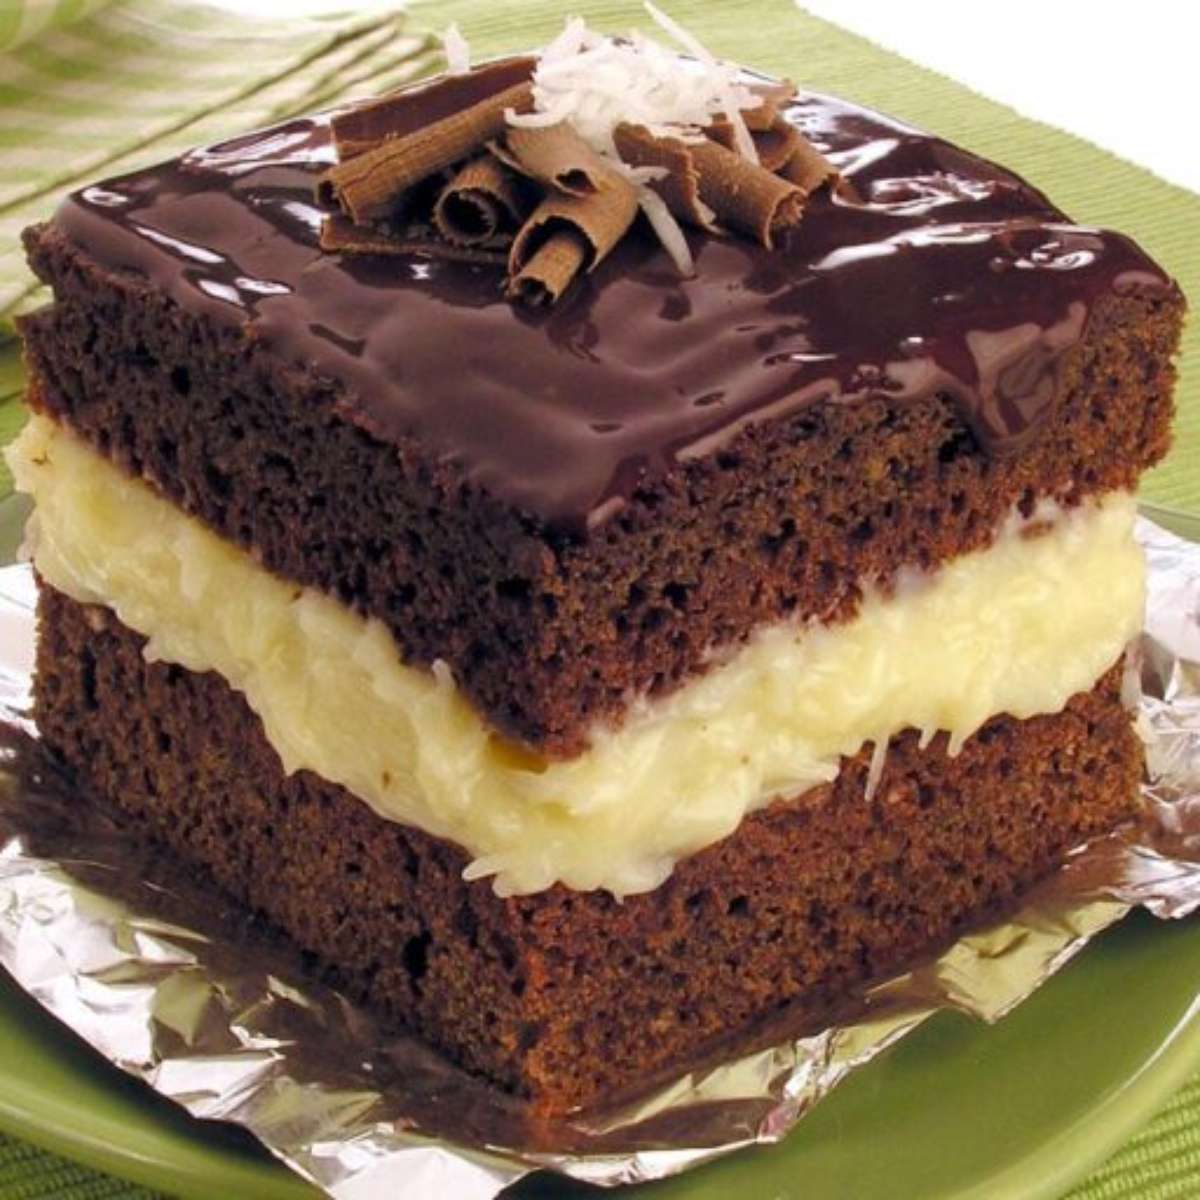 3 receitas de bolo com chocolate para fazer sucesso nesta Páscoa - Caldo Bom